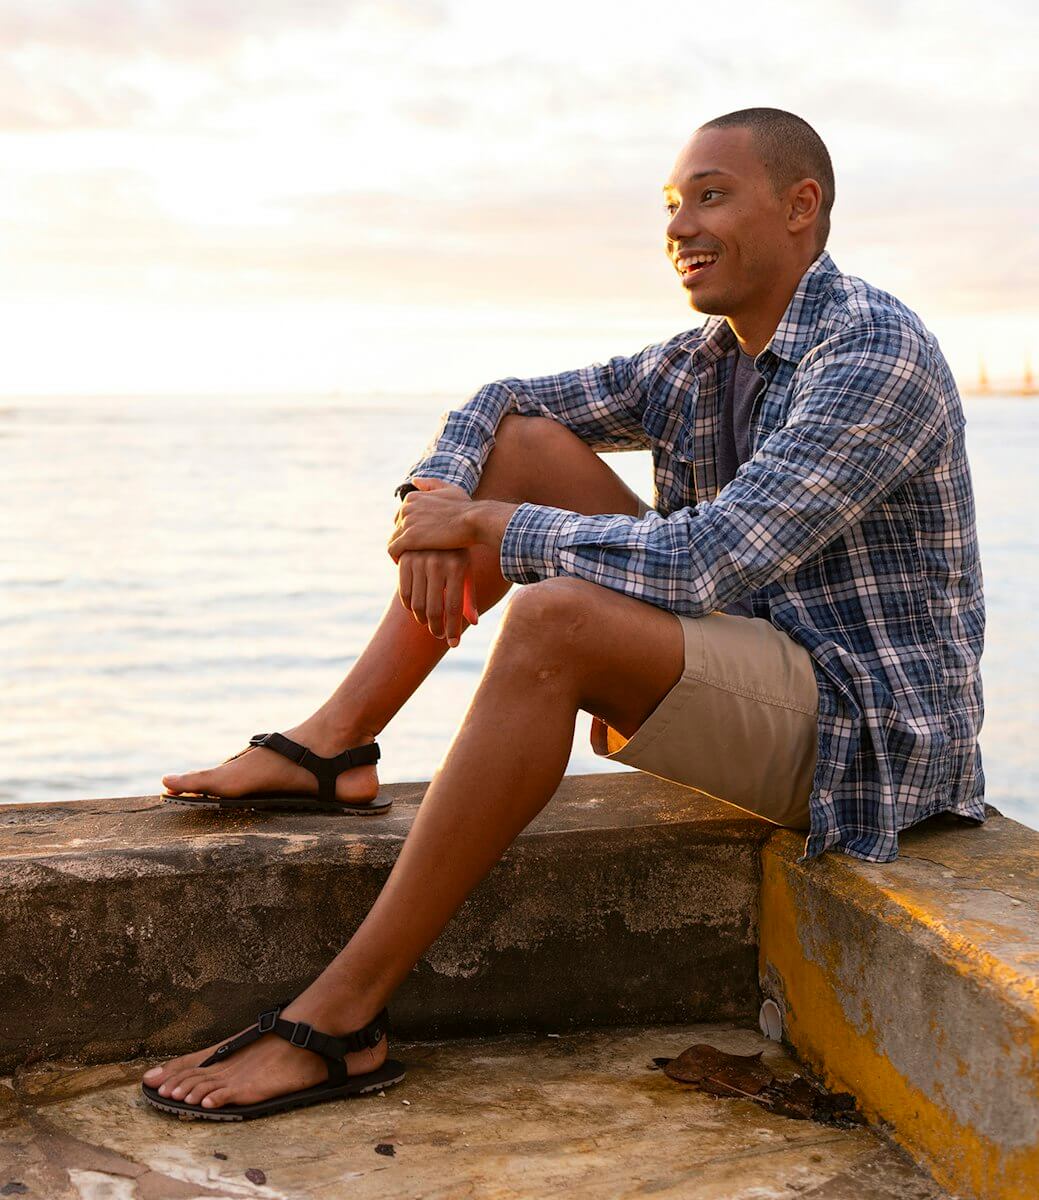 Ein lächelnder Mann, der mit seinen H-Trail-Sandalen auf dem Wasser sitzt